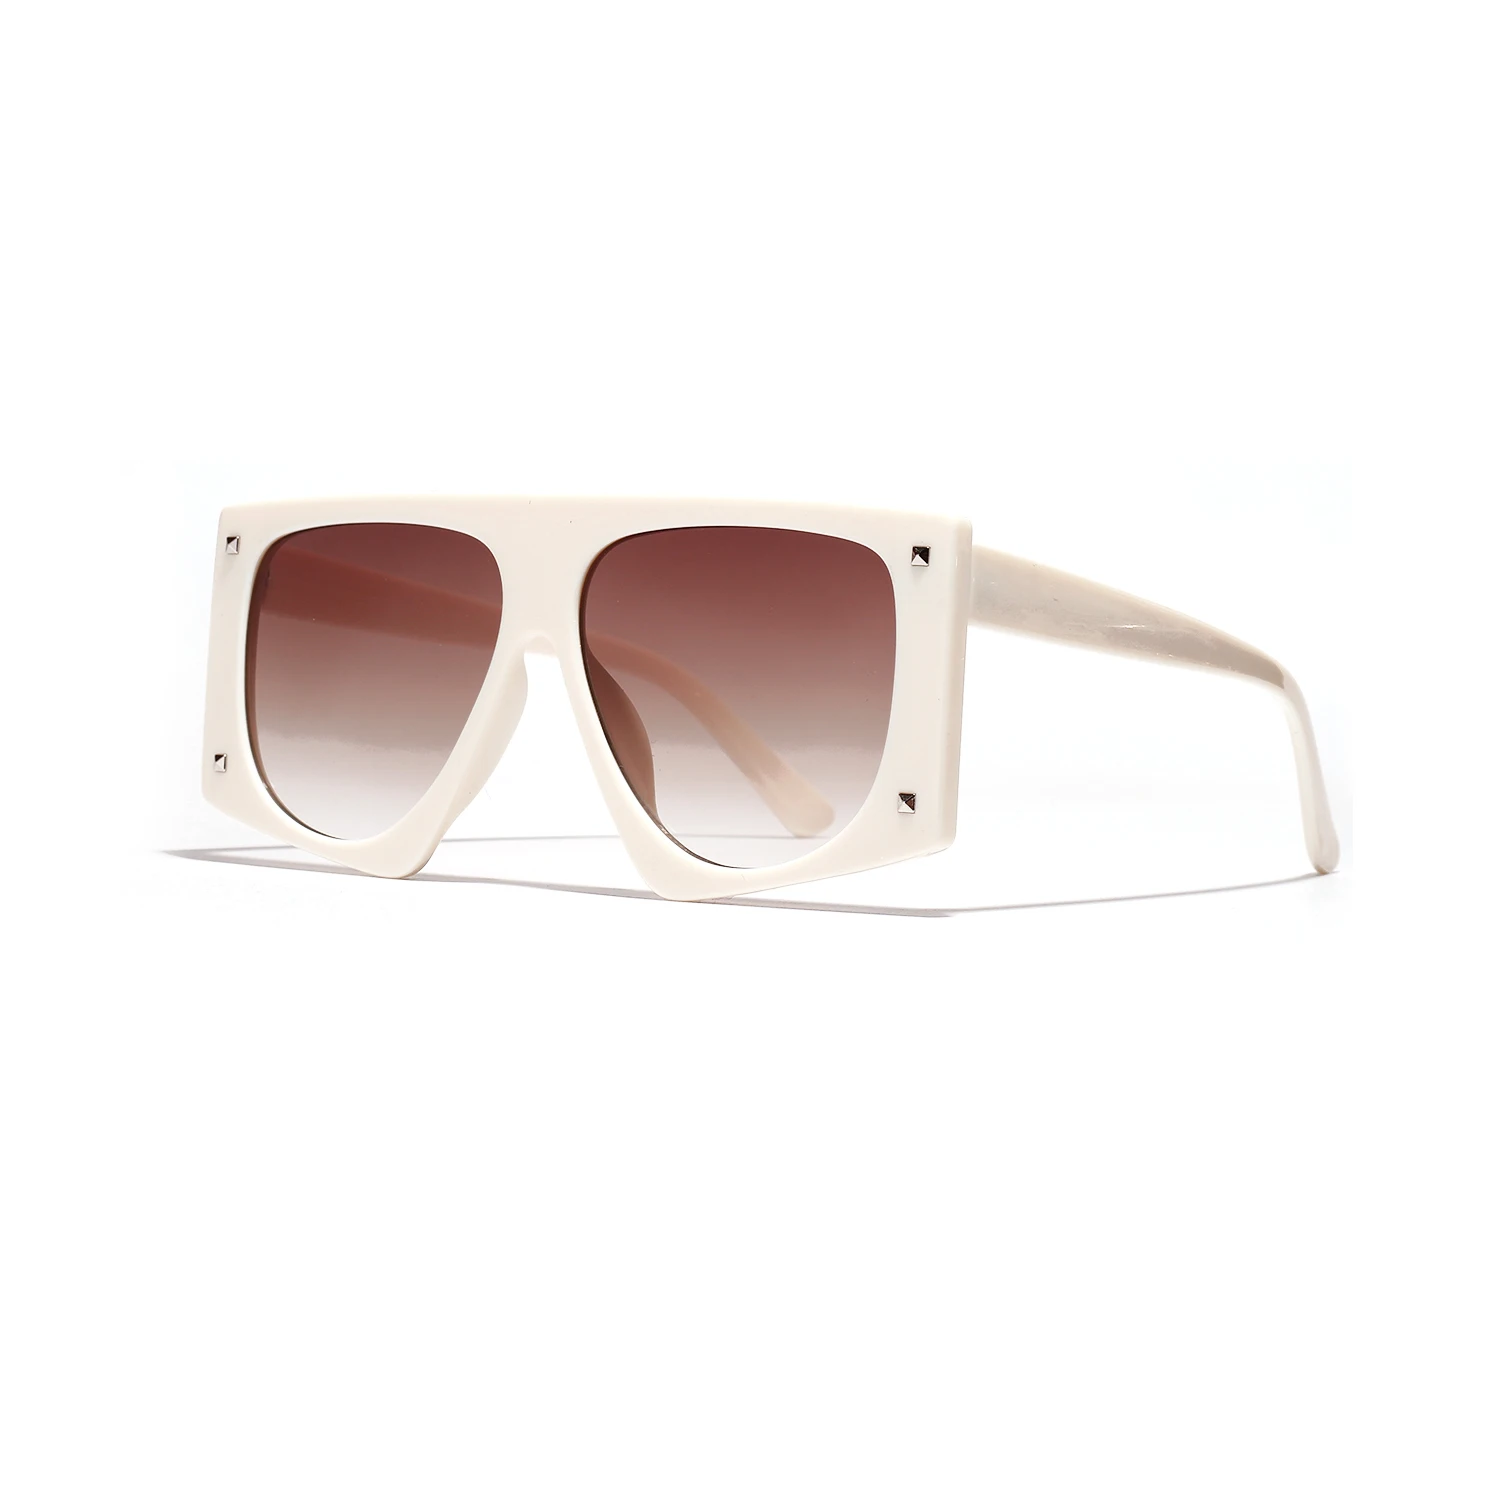 GIFANSEE для женщин негабаритных Квадратные Солнцезащитные очки для Винтаж дизайн защита от солнца очки многоугольные линзы заклепки uv400 люксовый бренд